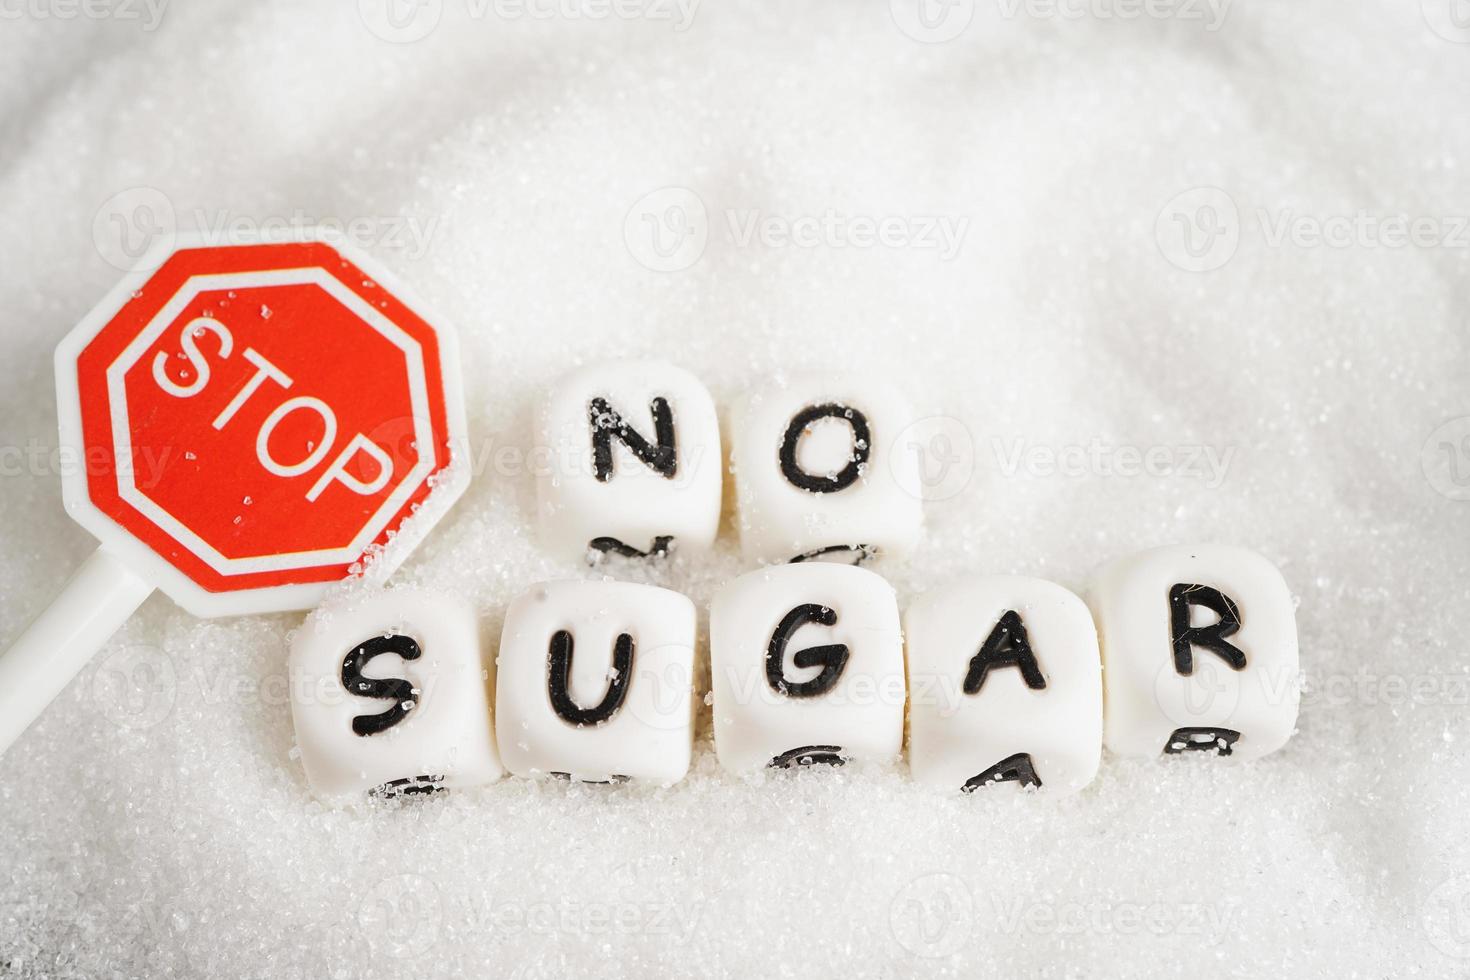 Stop, süßer Kristallzucker mit Text, Diabetesprävention, Ernährung und Gewichtsverlust für eine gute Gesundheit. foto